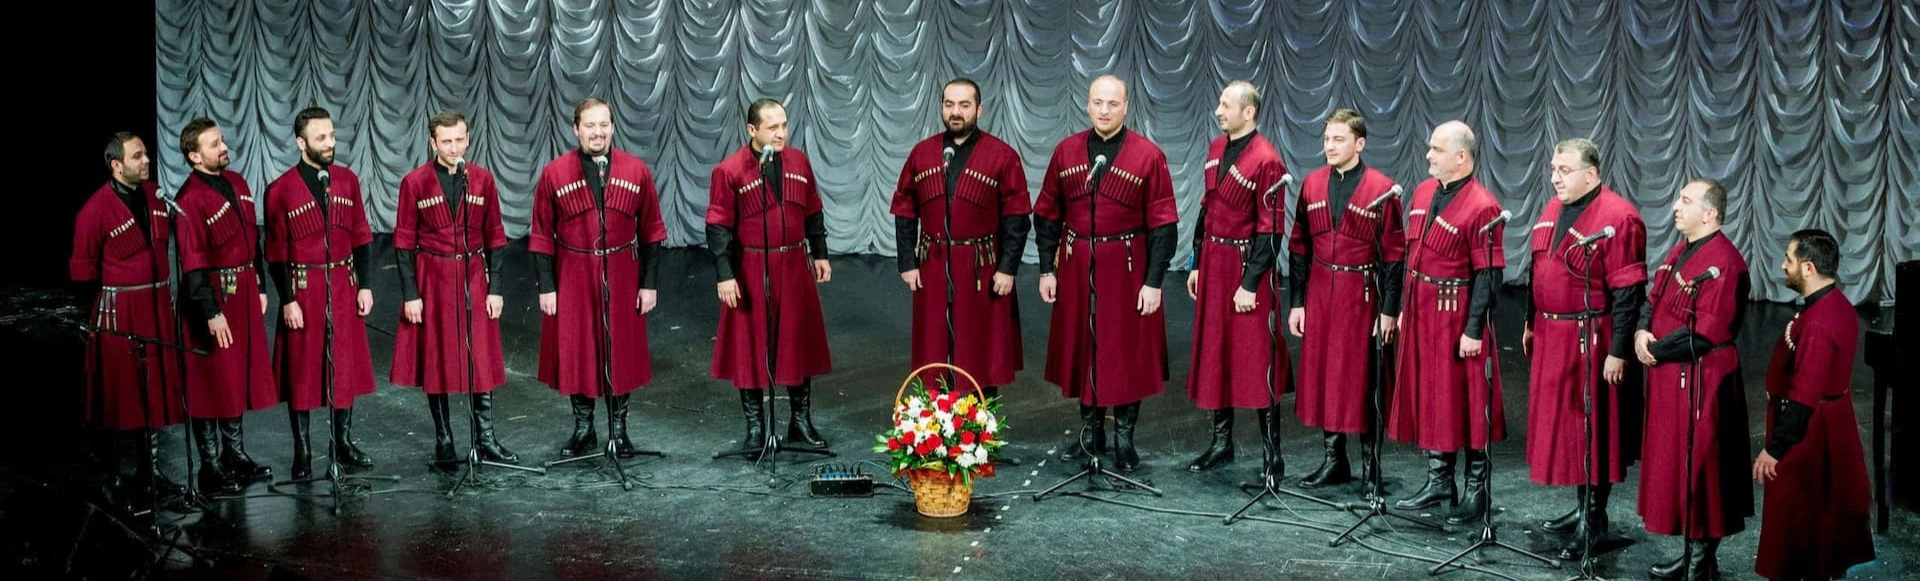 Патриарший хор Грузии "Басиани"